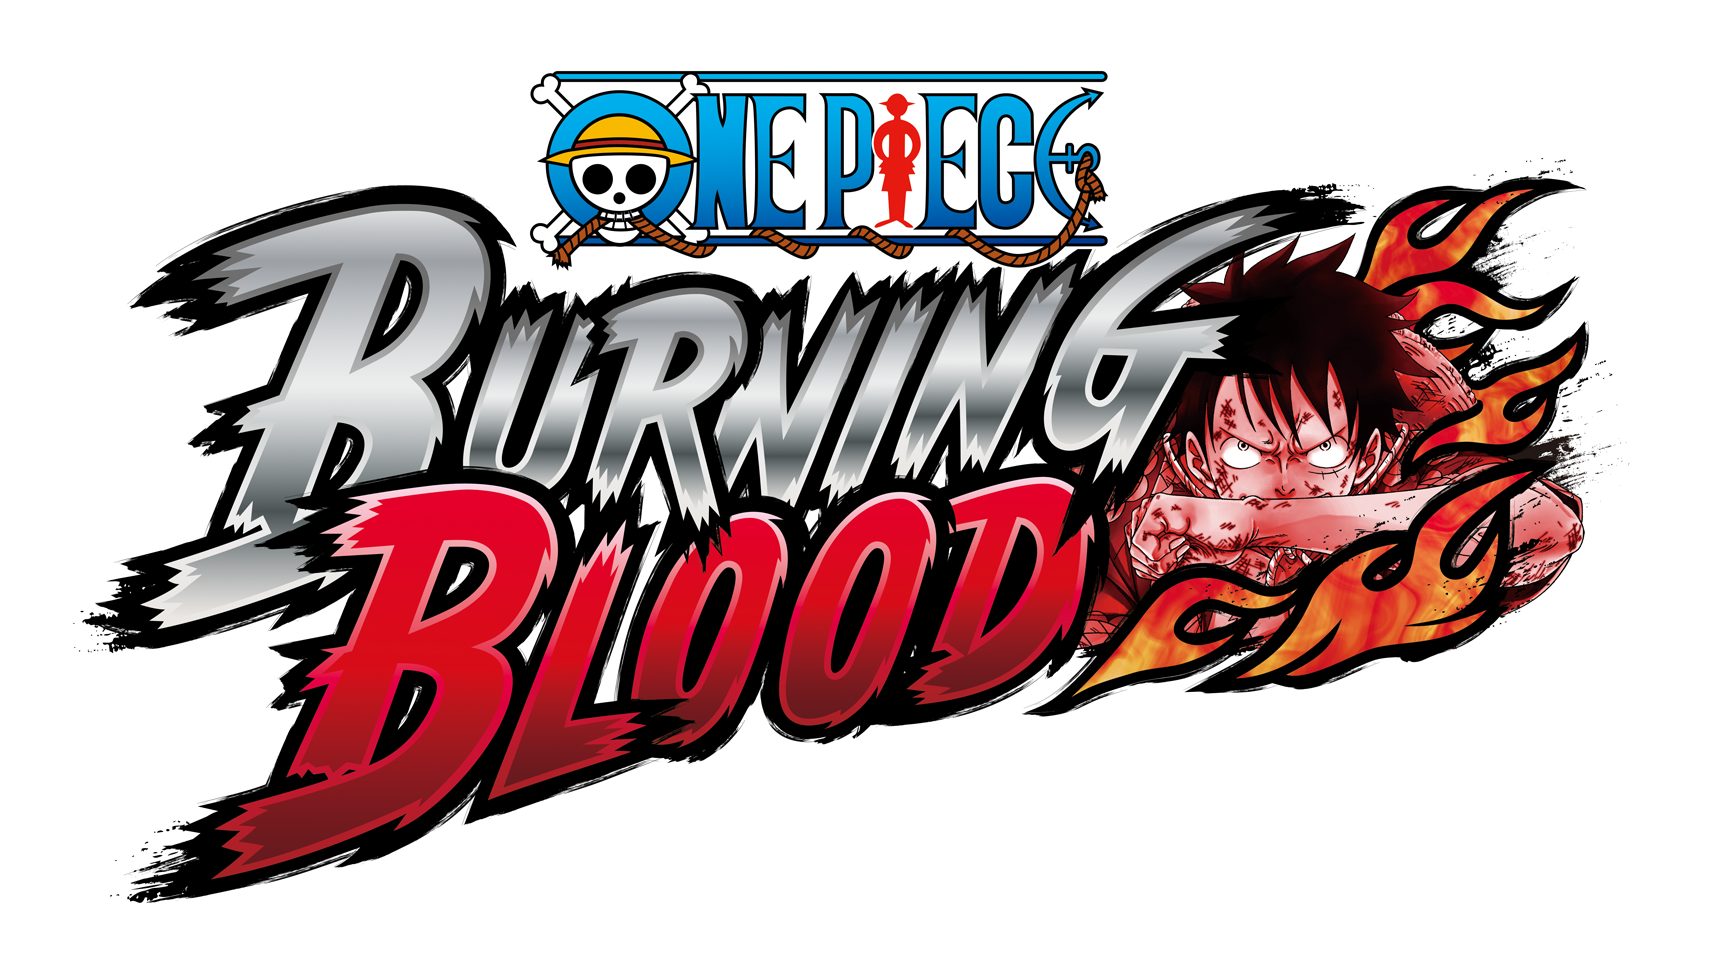 One Piece Burning Blood Logo - Burning Log, Transparent background PNG HD thumbnail